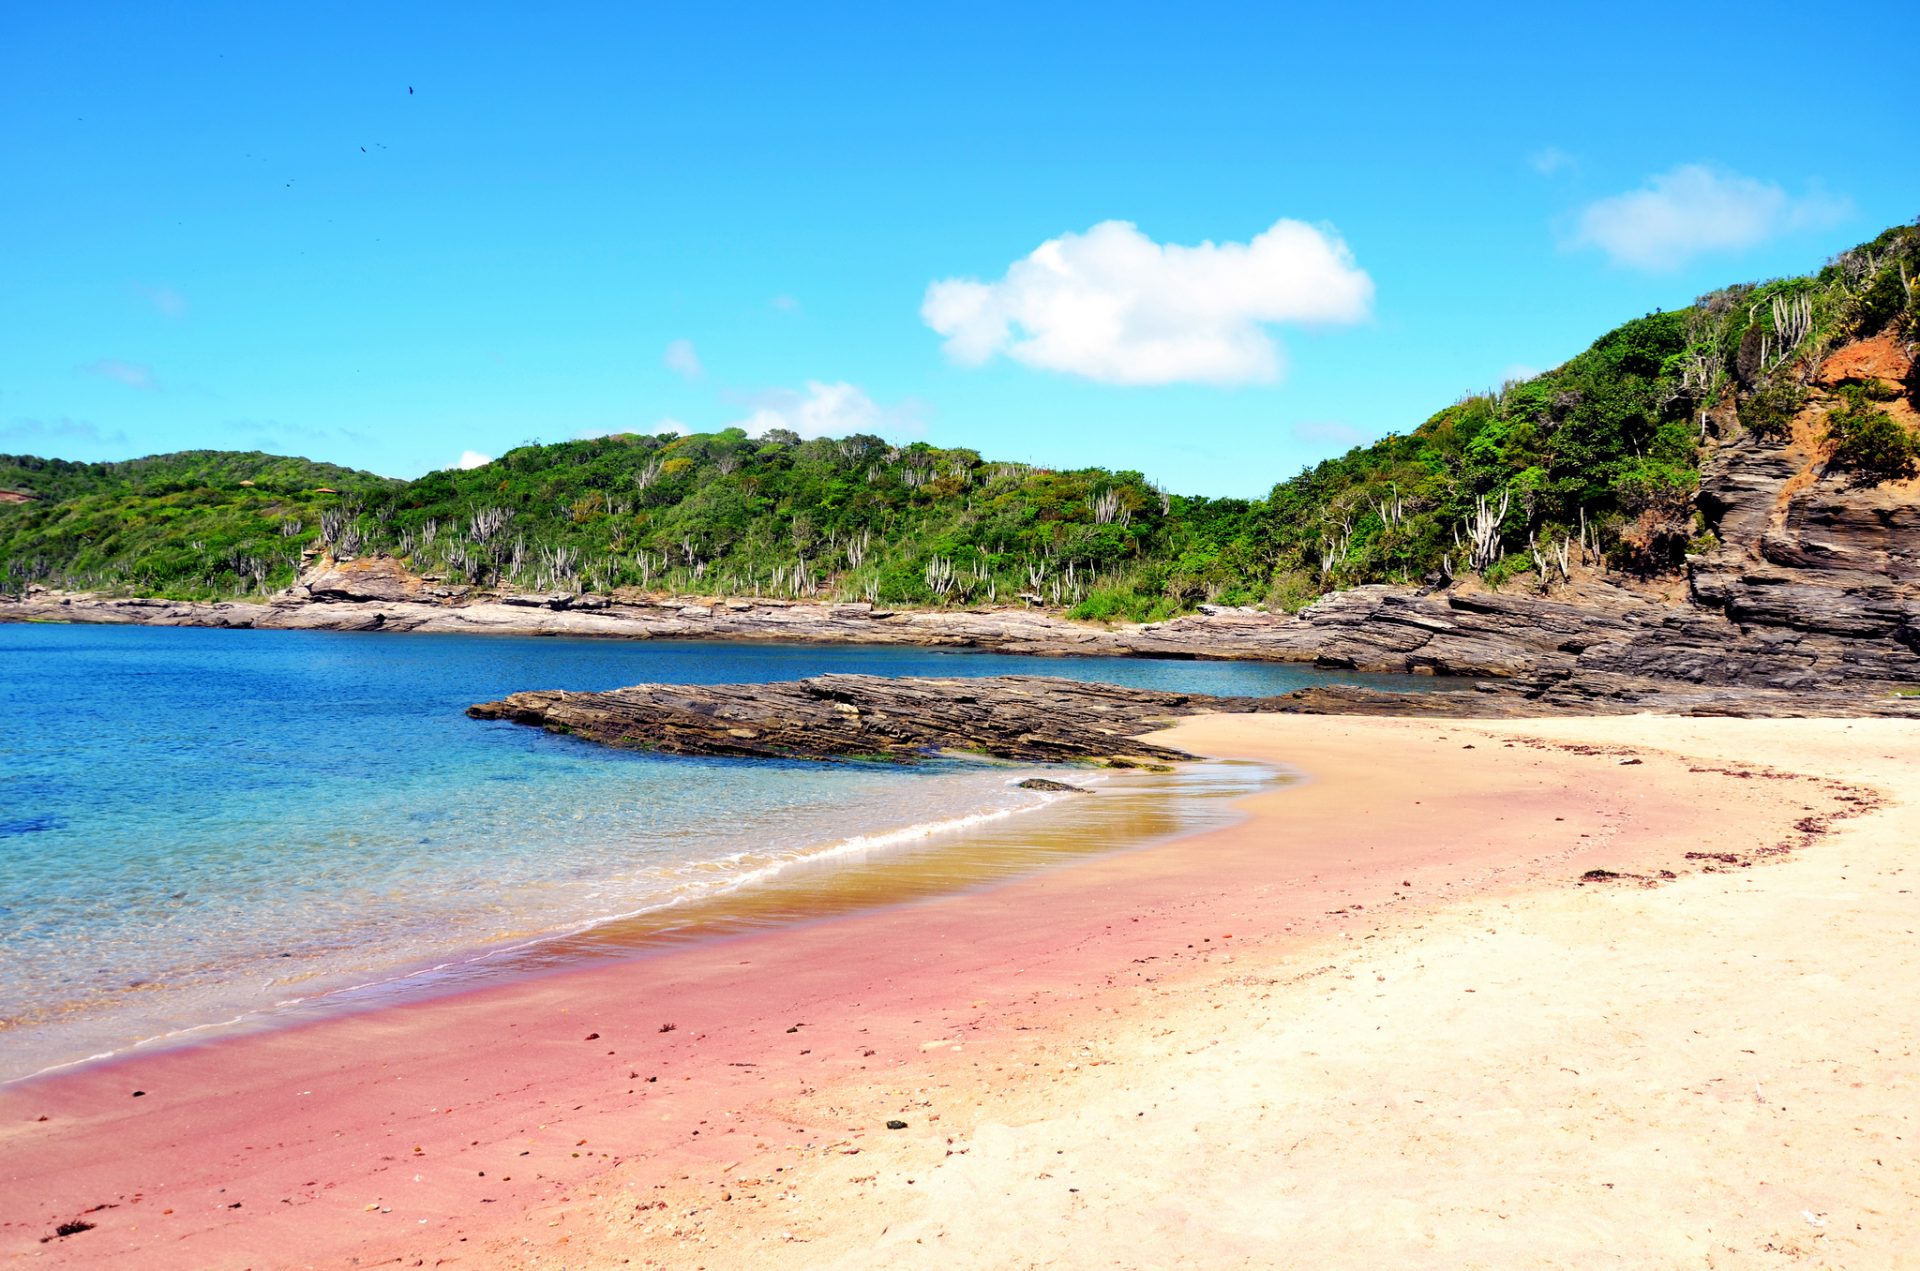 Mar azul e areia vermelha formam a paisagem exótica da Praia do Forno, em  Búzios